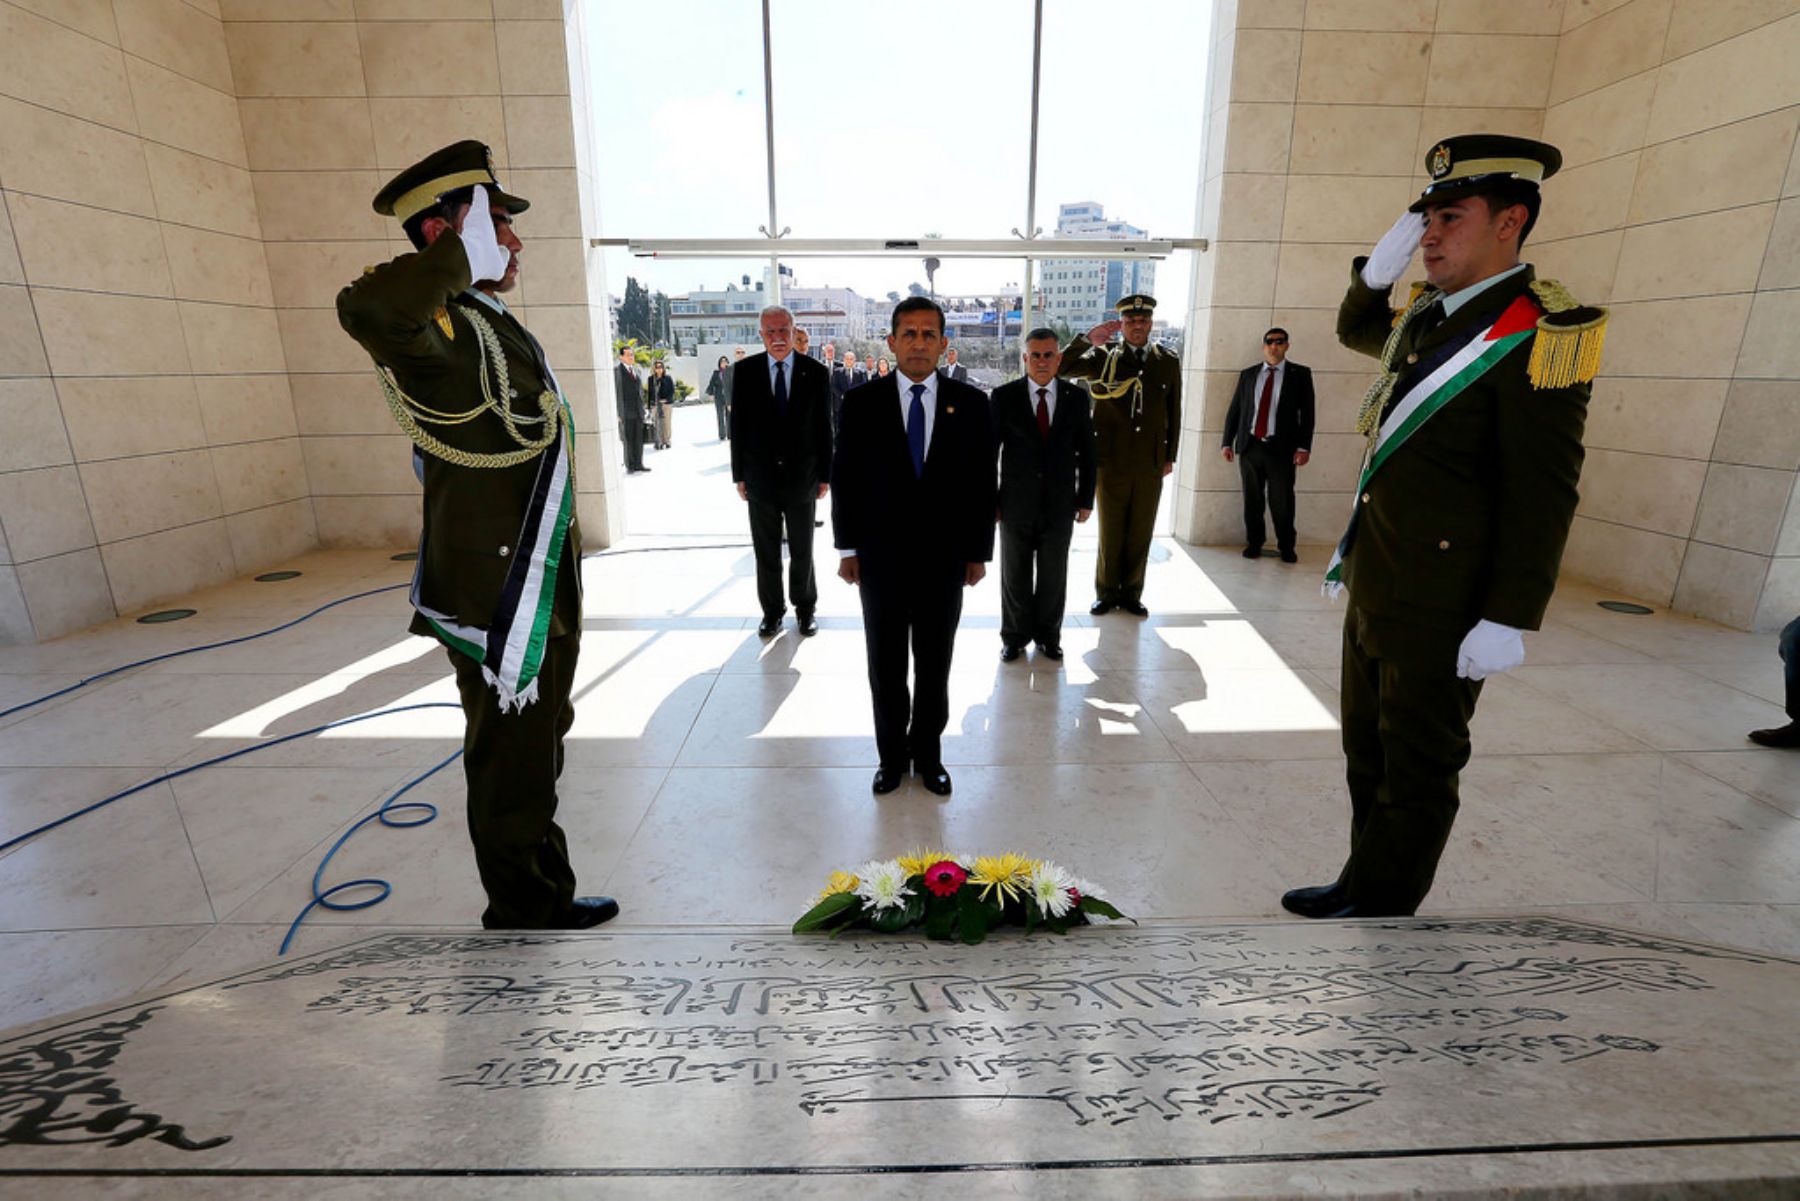 El Presidente de la República, Ollanta Humala Tasso, participó hoy en una ceremonia de ofrenda floral a la tumba del líder palestino Yasser Arafat, durante una visita oficial a Palestina. Foto: ANDINA/Presidencia,